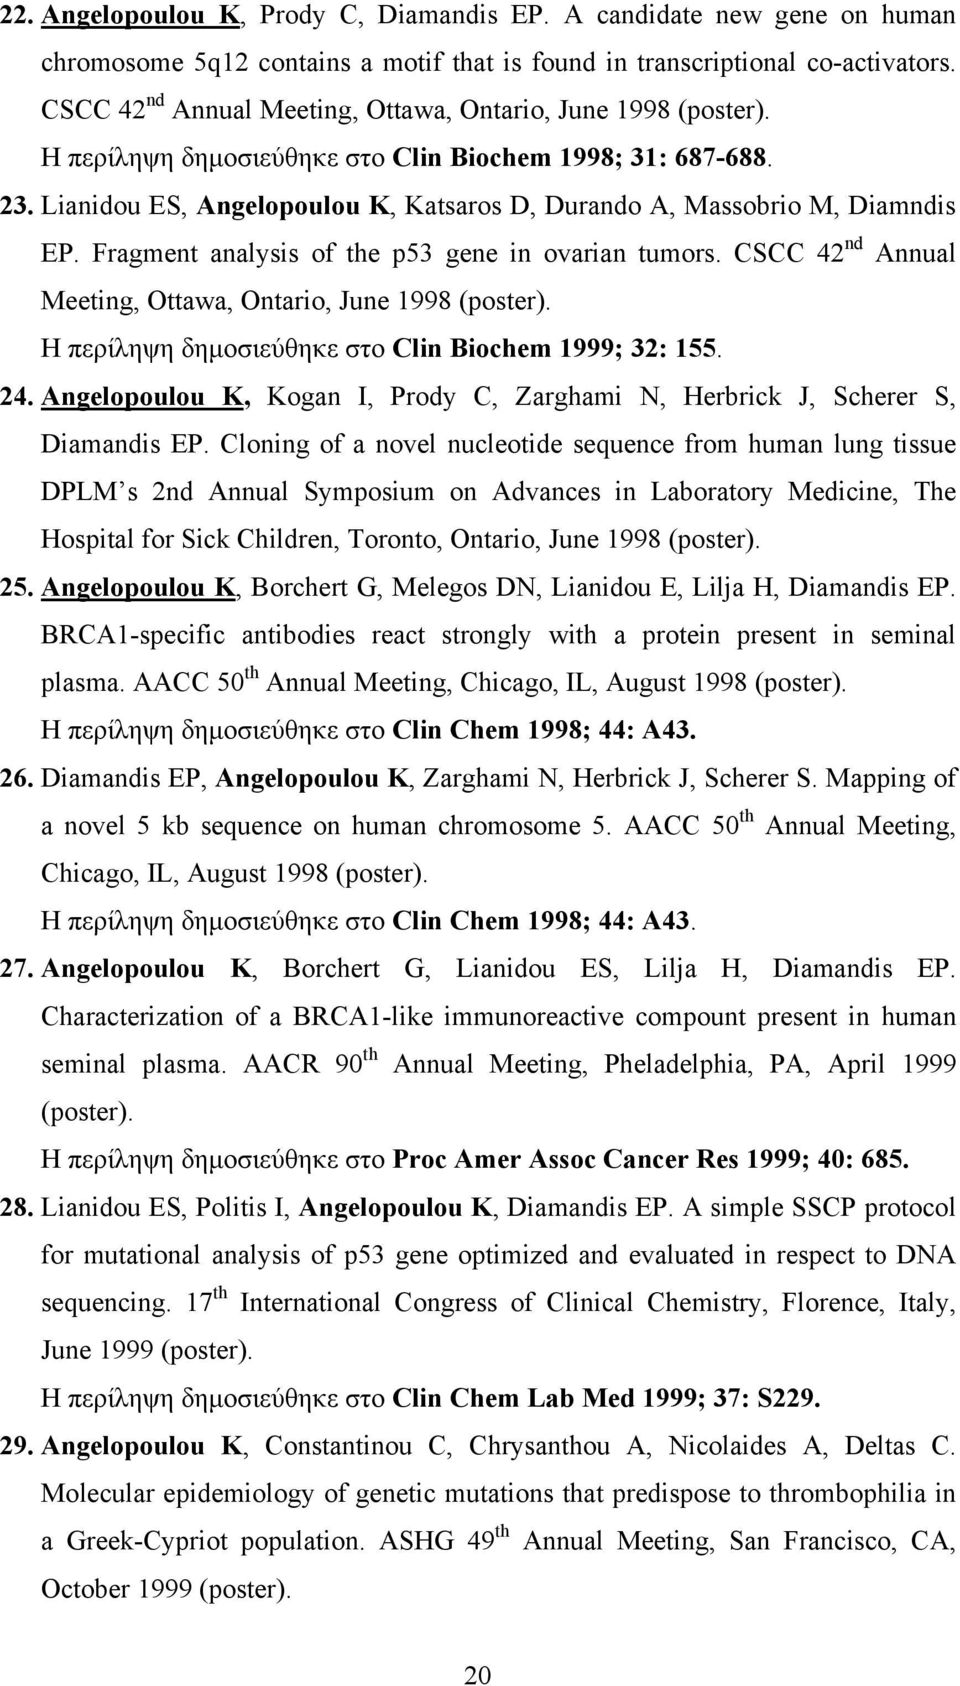 Lianidou ES, Angelopoulou K, Katsaros D, Durando A, Massobrio M, Diamndis EP. Fragment analysis of the p53 gene in ovarian tumors. CSCC 42 nd Annual Meeting, Ottawa, Ontario, June 1998 (poster).